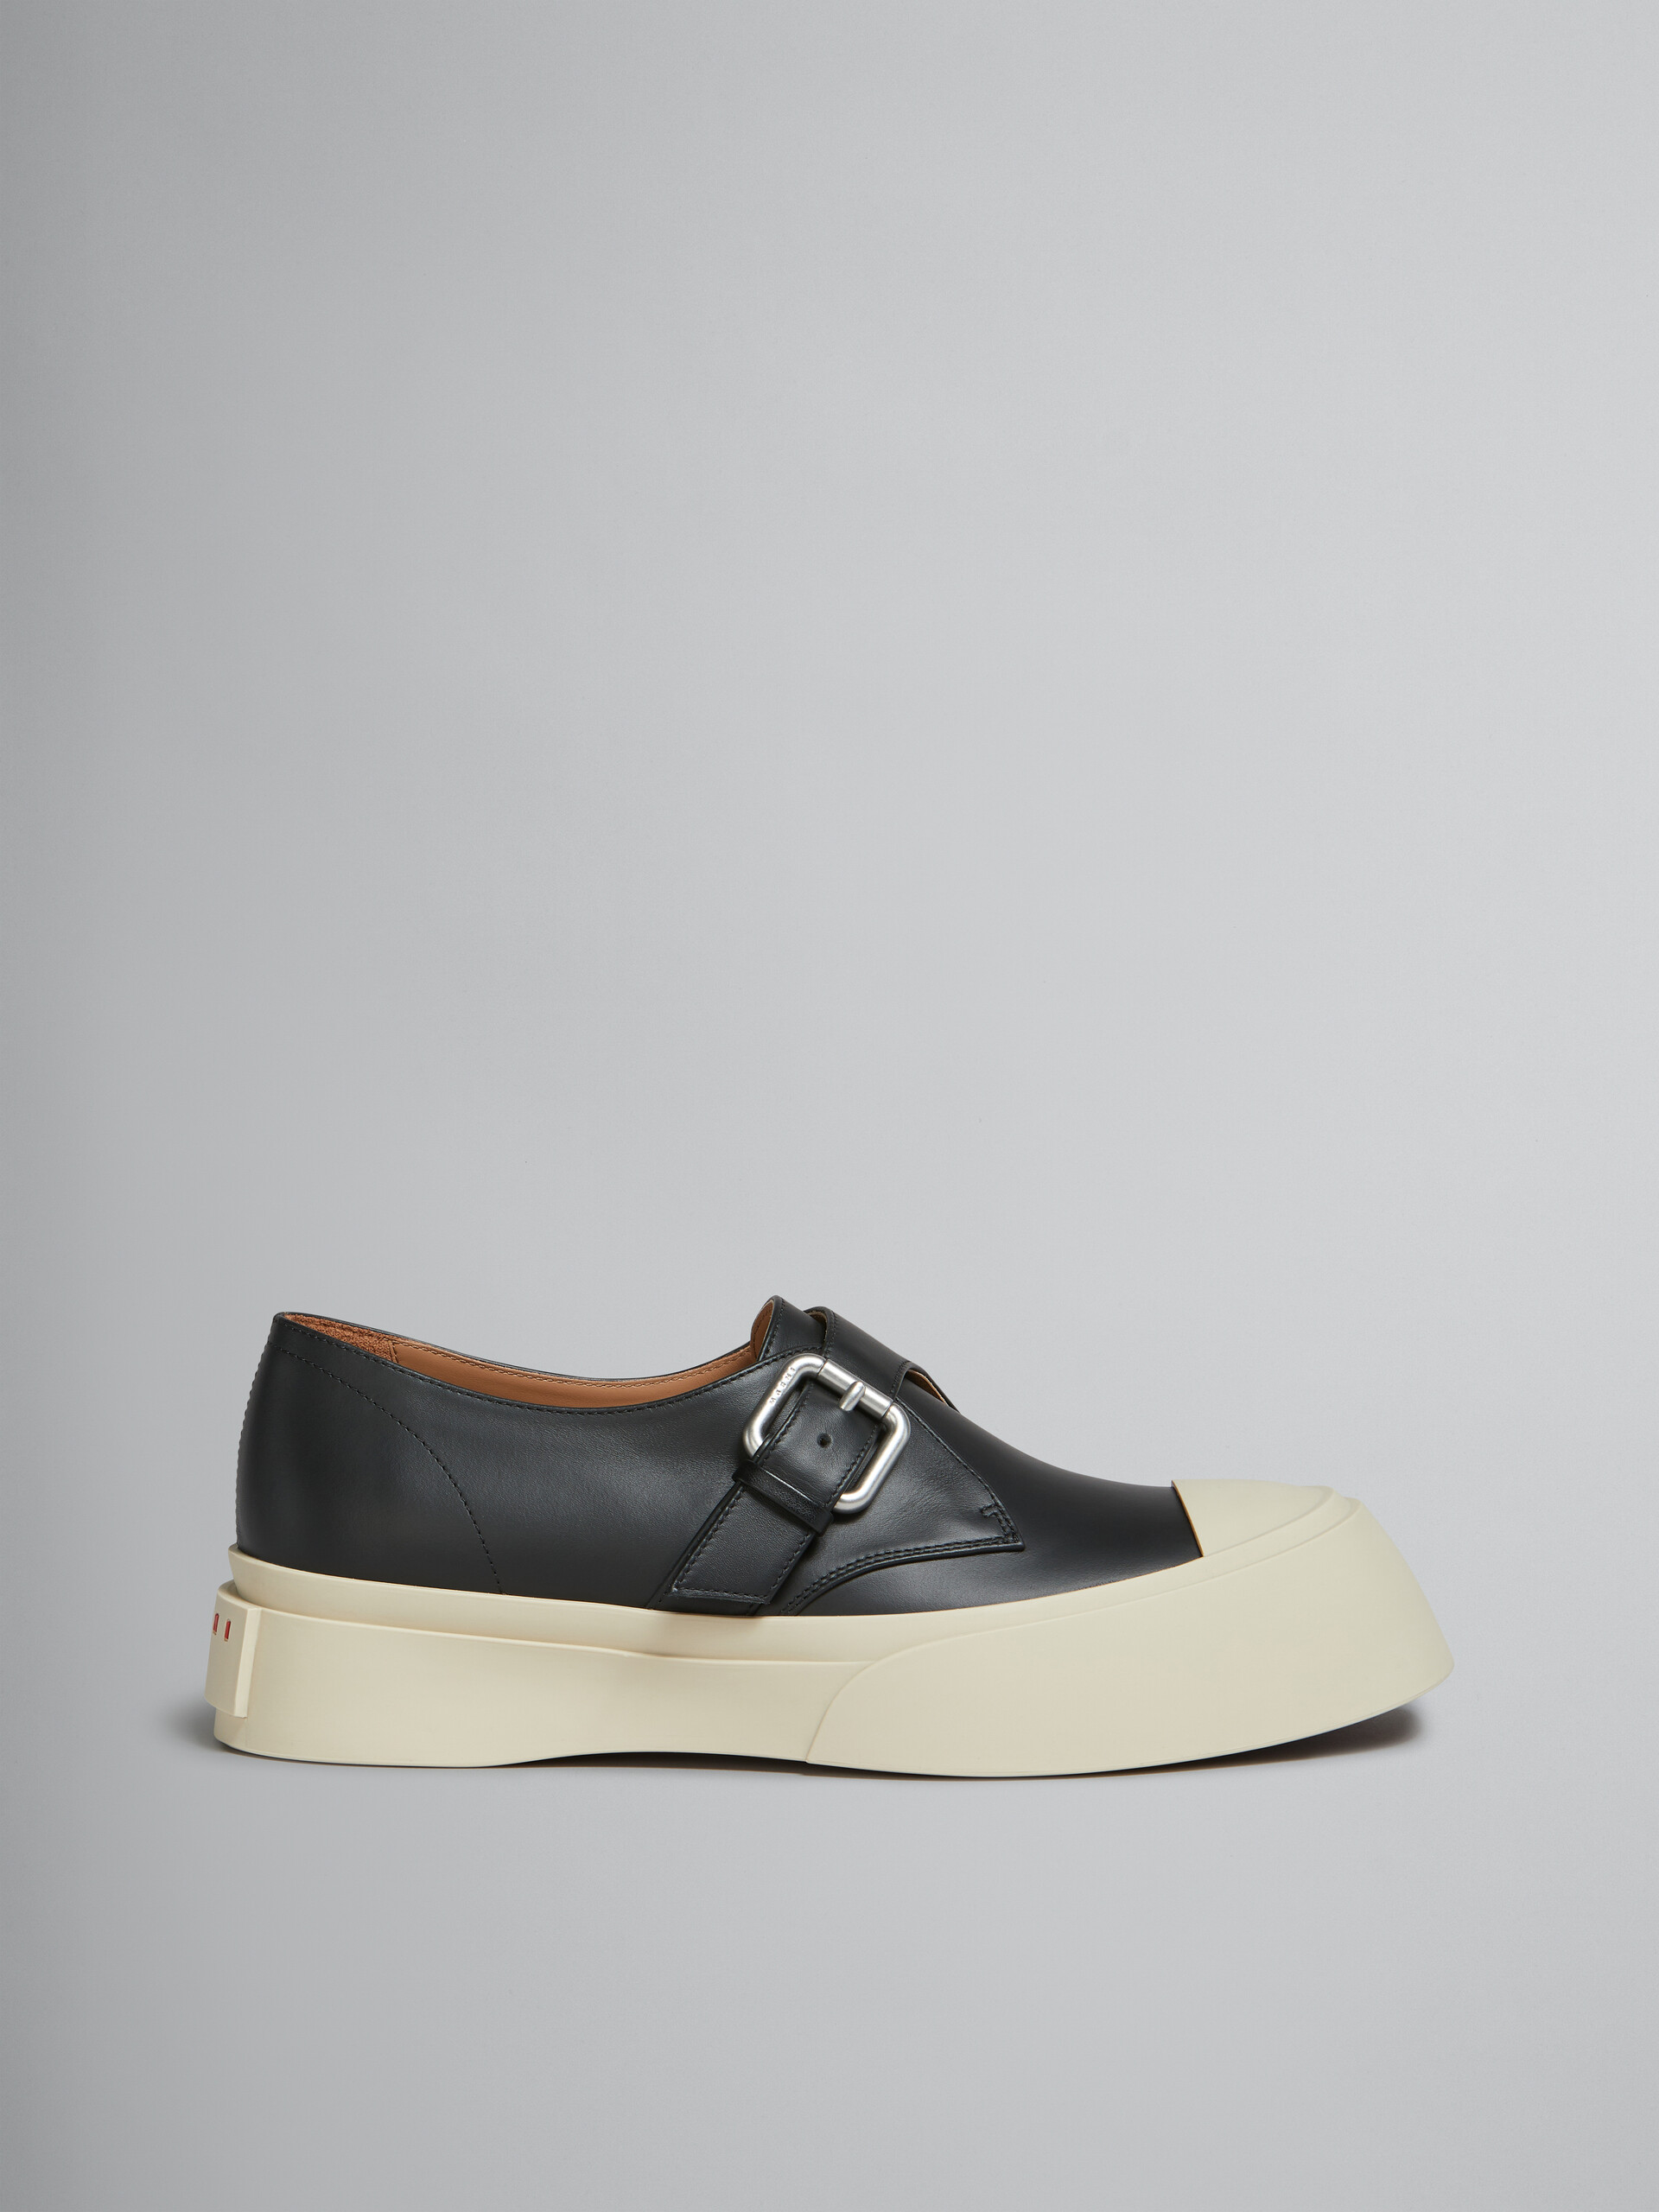 Zapato Pablo con cierre de hebilla de piel negra - Sneakers - Image 1